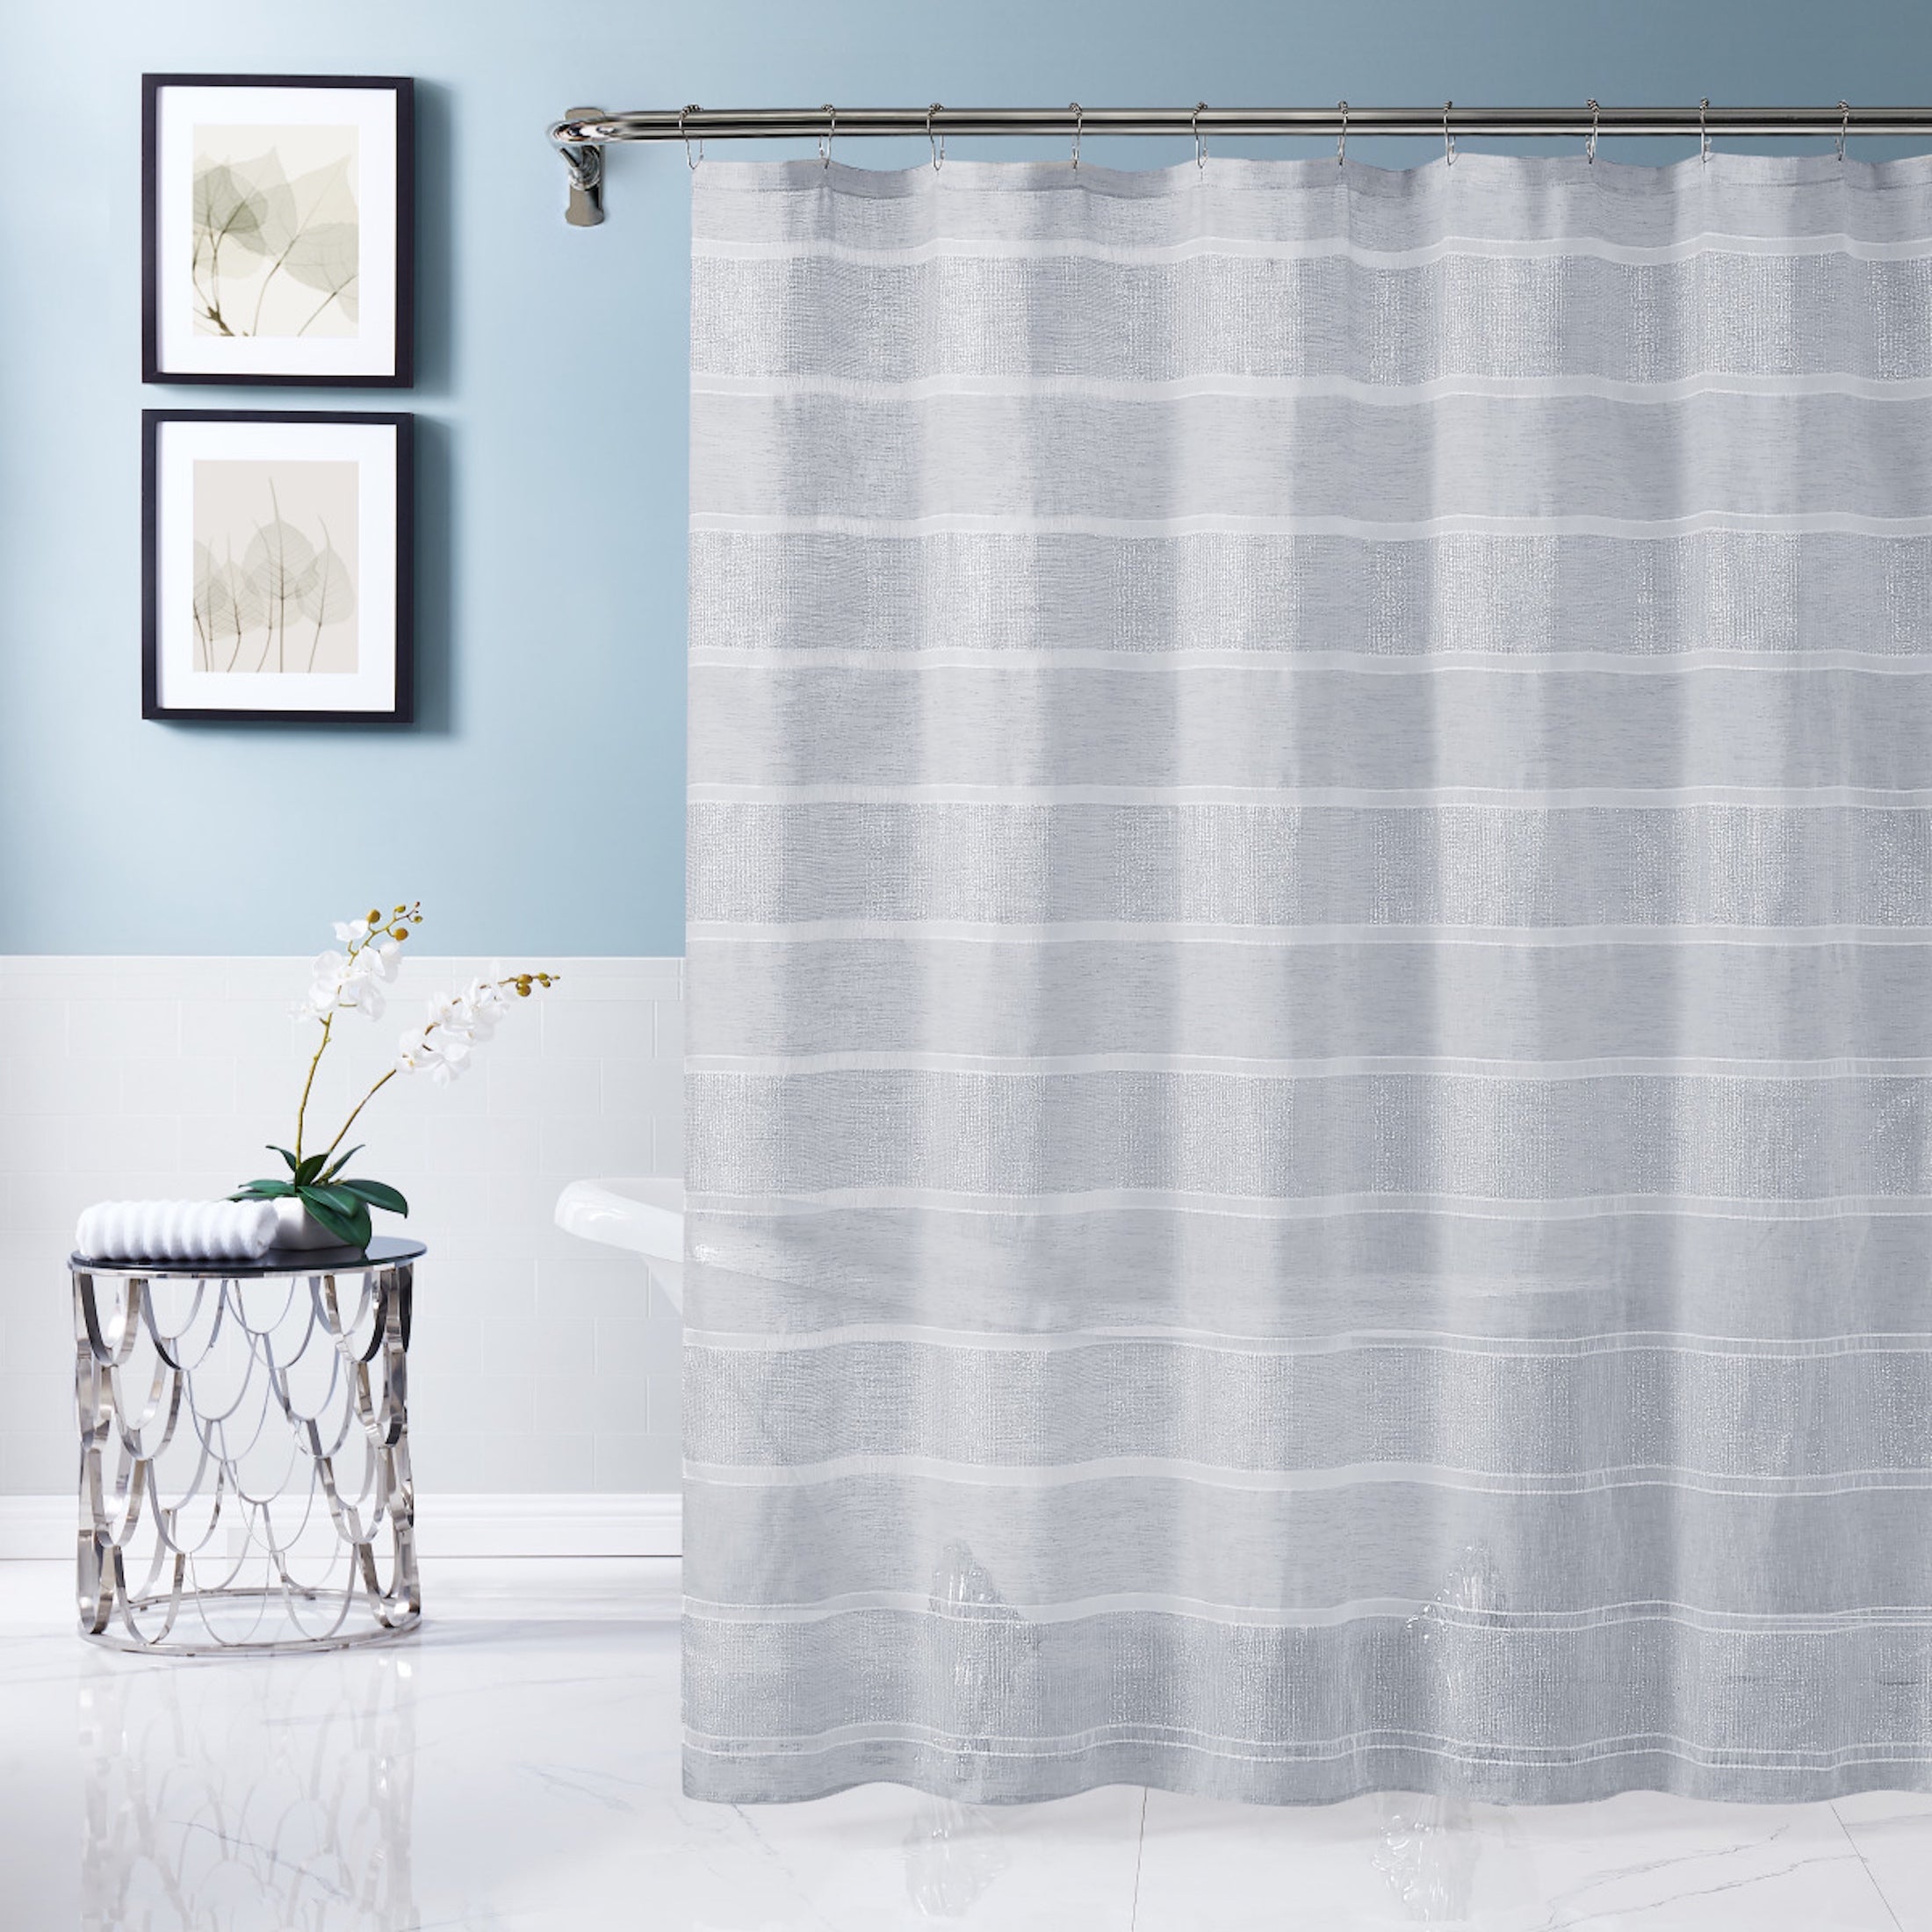 Dainty Home Lurex Stripe 3D Lurex Embedded Textured Striped Linen Look Shower Curtain With Lurex Stripes